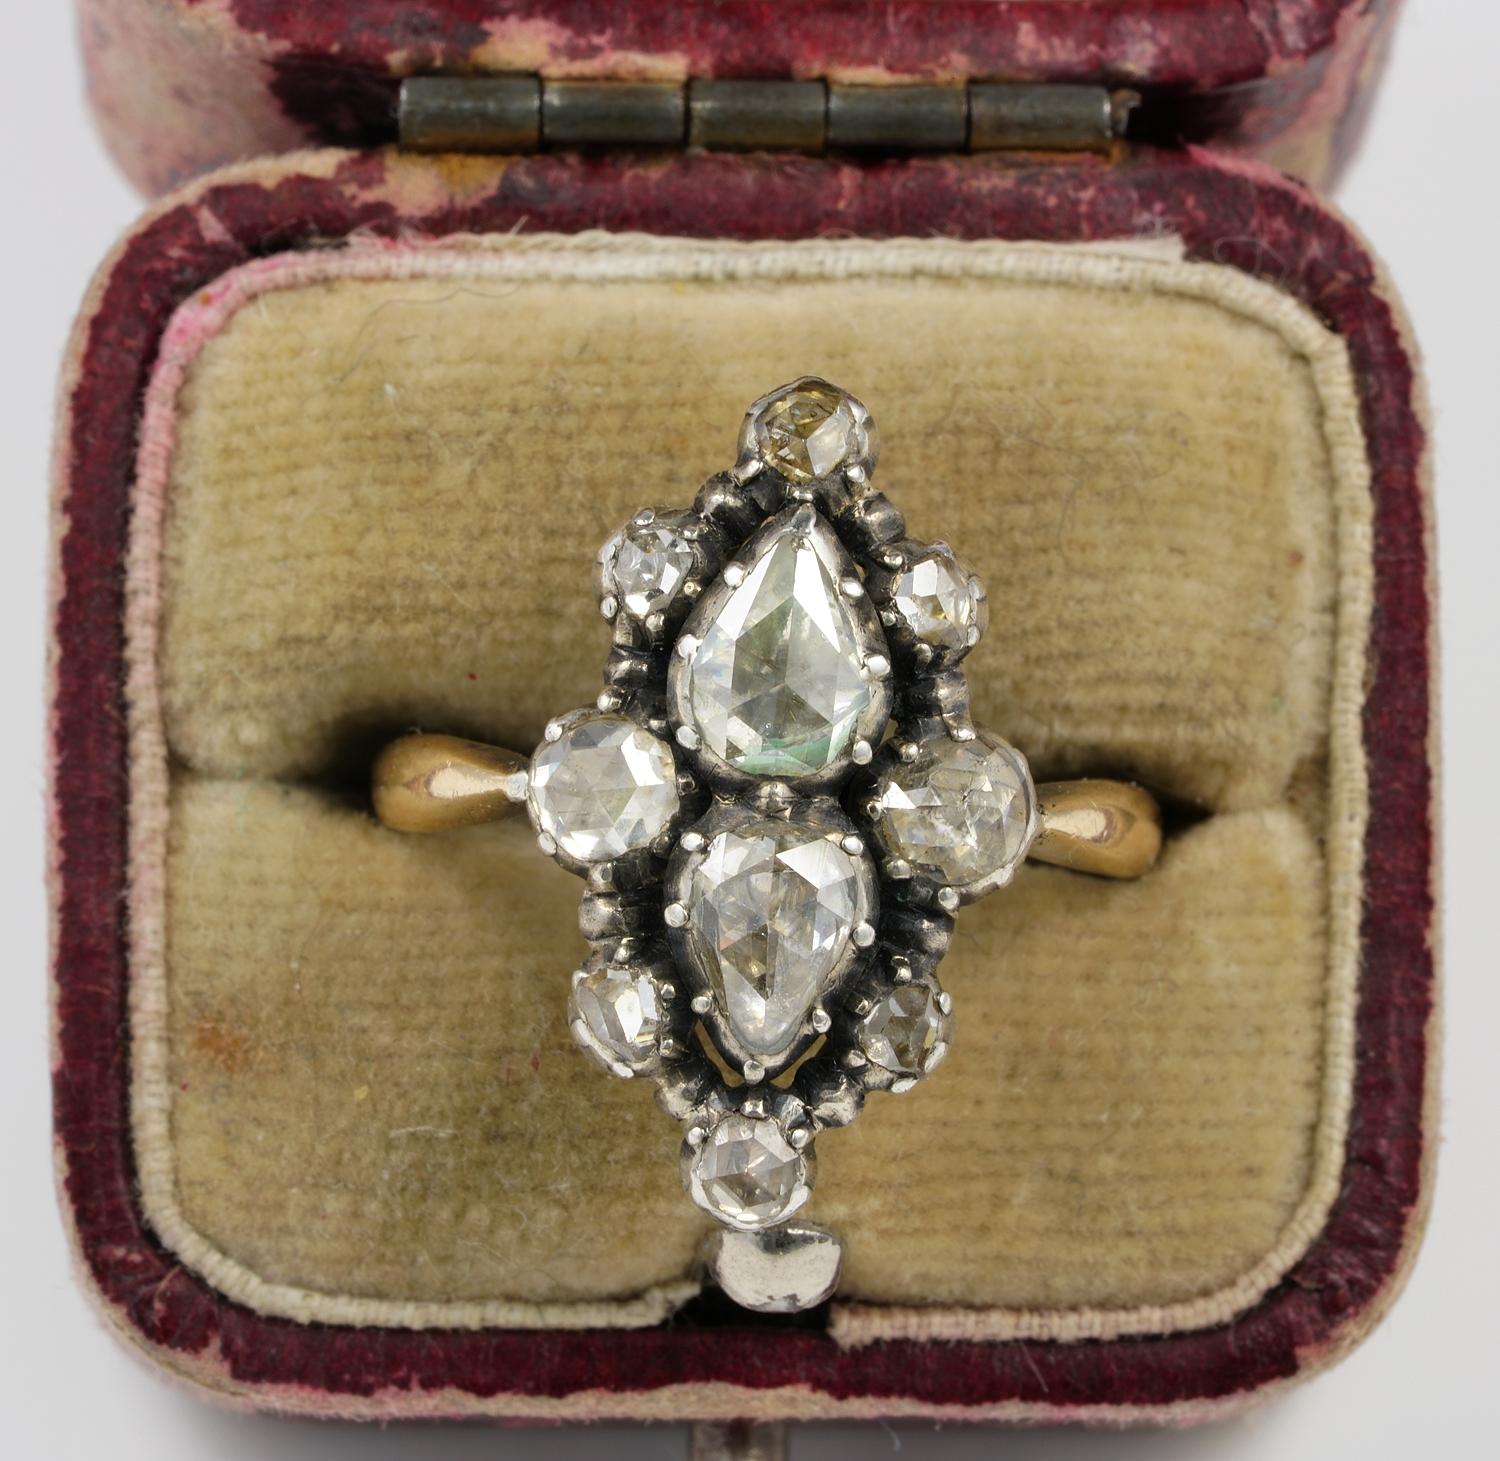 Dieser einzigartige Diamant-Navette-Ring ist 1800/30 ca
Wunderschön handgefertigt in der Zeit von massivem 18 Kt Gold/Silber
Charmanter flacher navetteförmiger Kopf, der aus Diamanten im Rosenschliff besteht, die ihm so viel diskrete Eleganz und